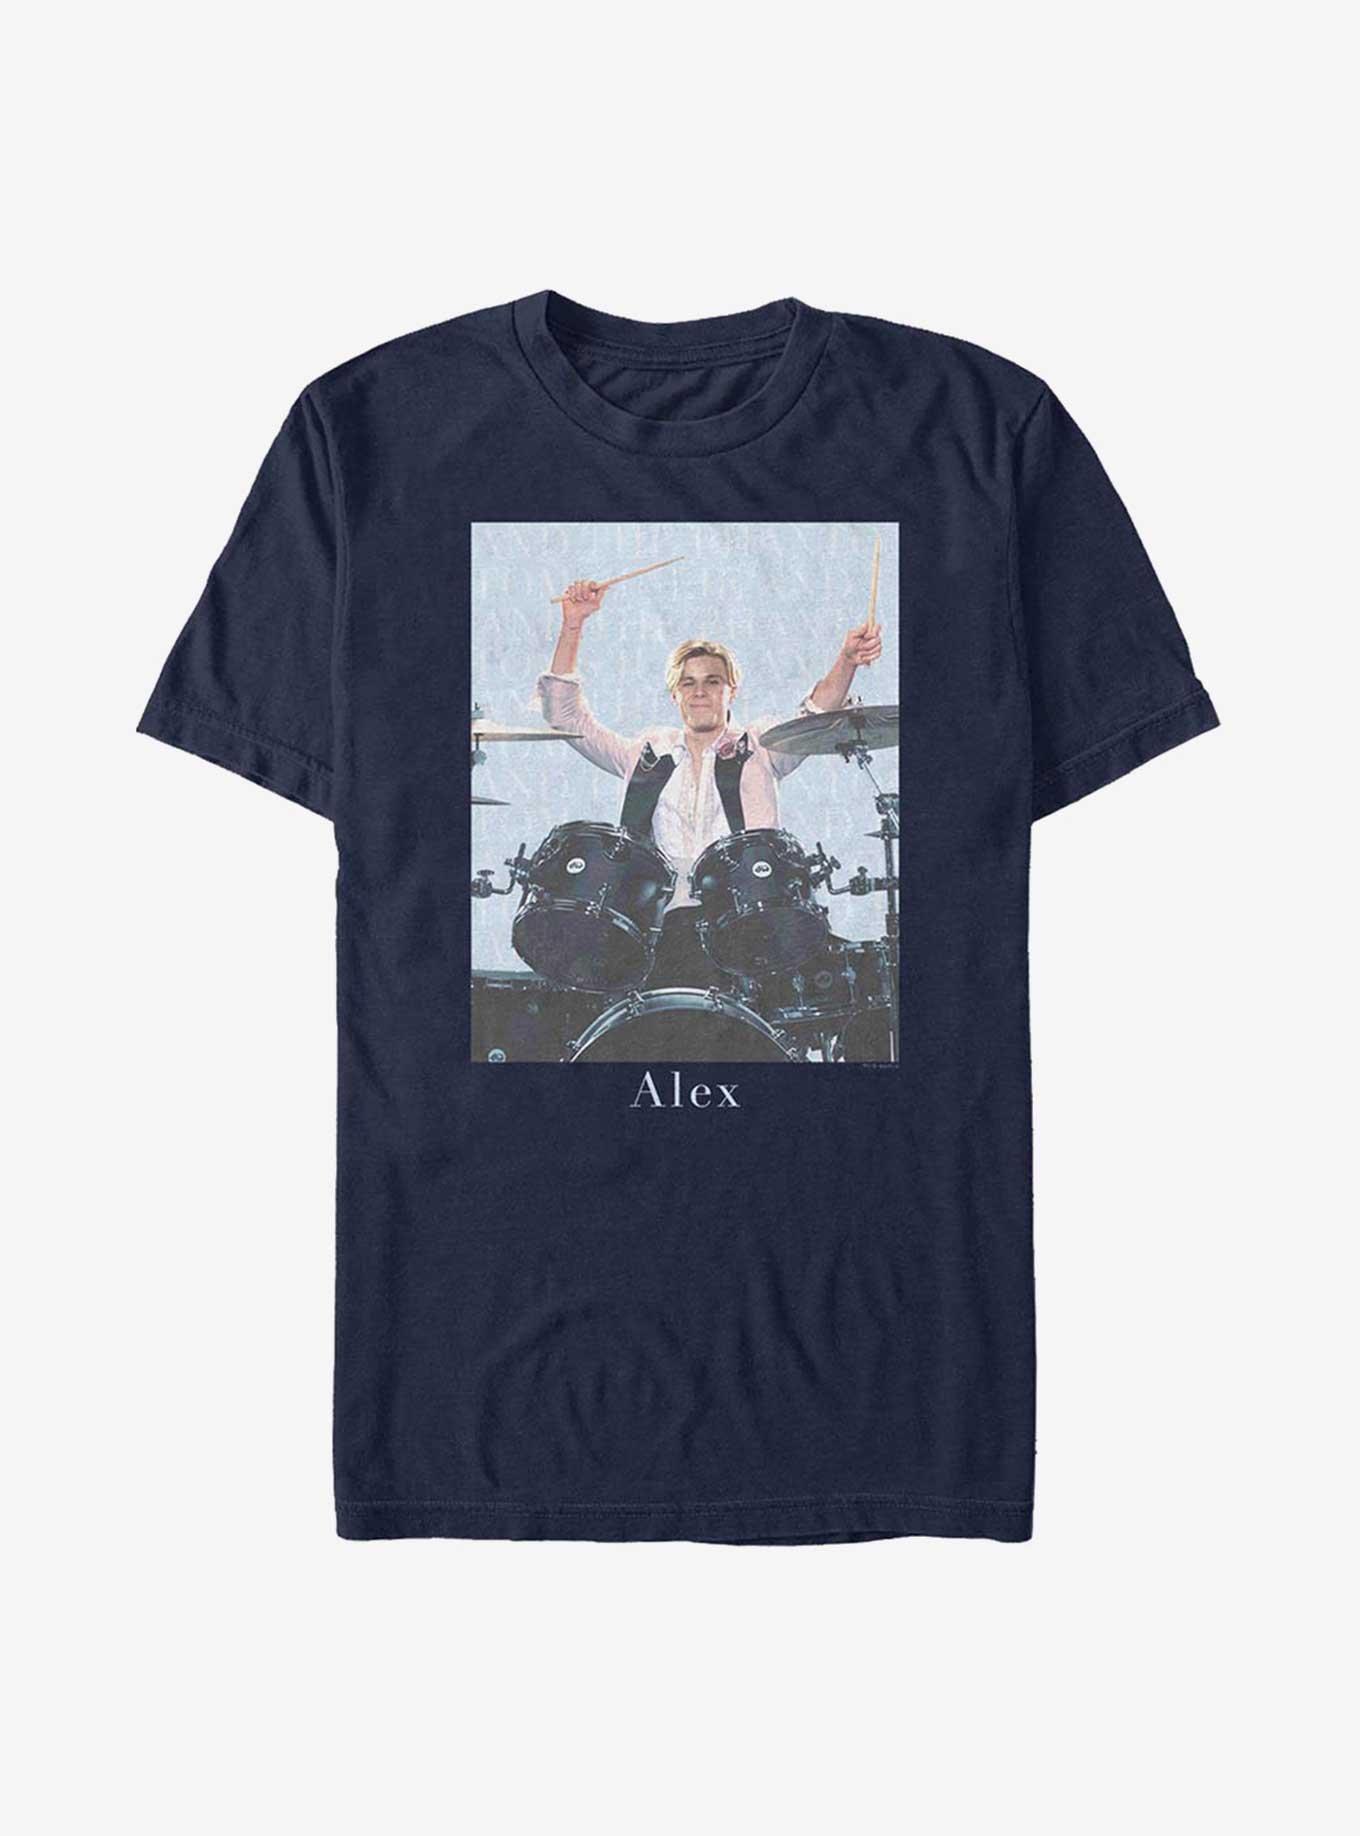 Julie and the Phantoms Drummer Alex T-Shirt